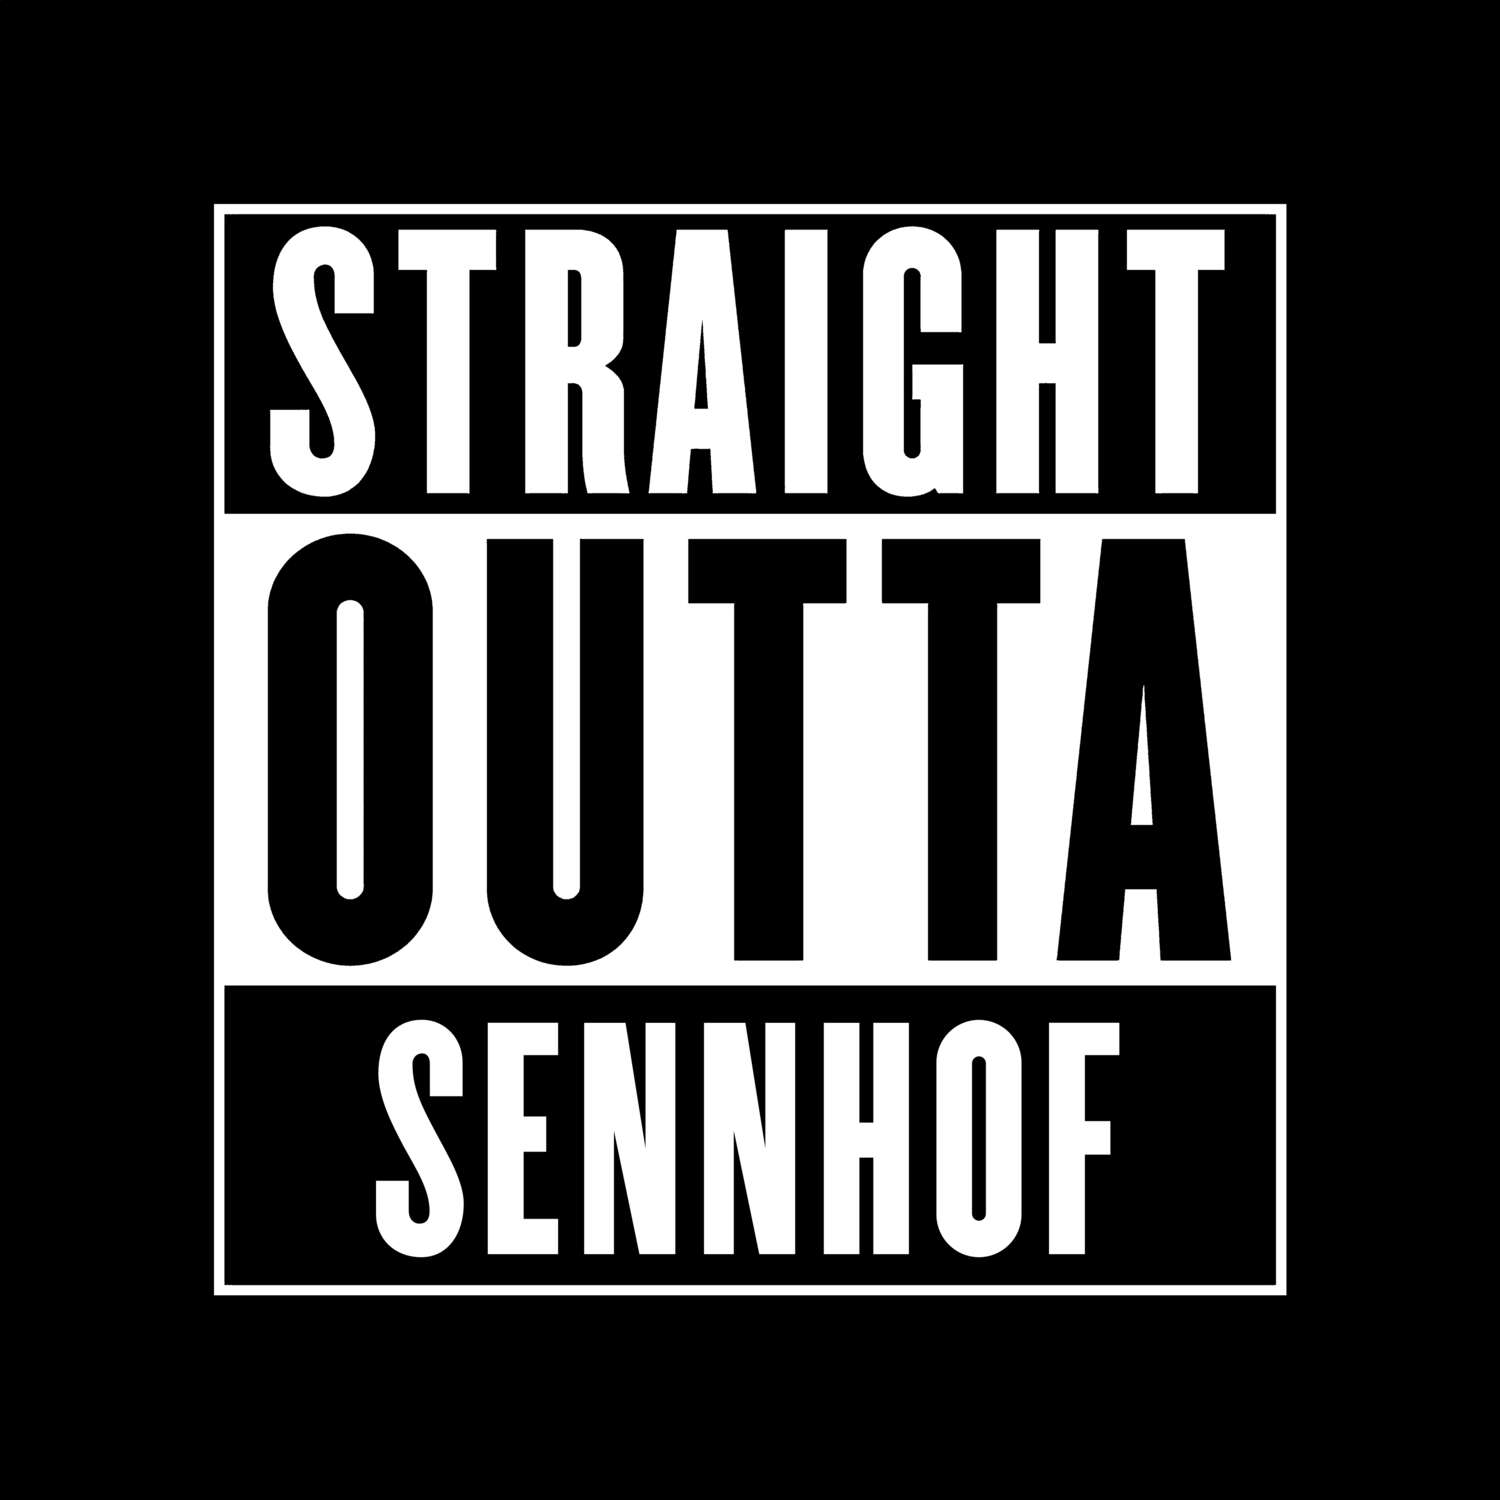 Sennhof T-Shirt »Straight Outta«